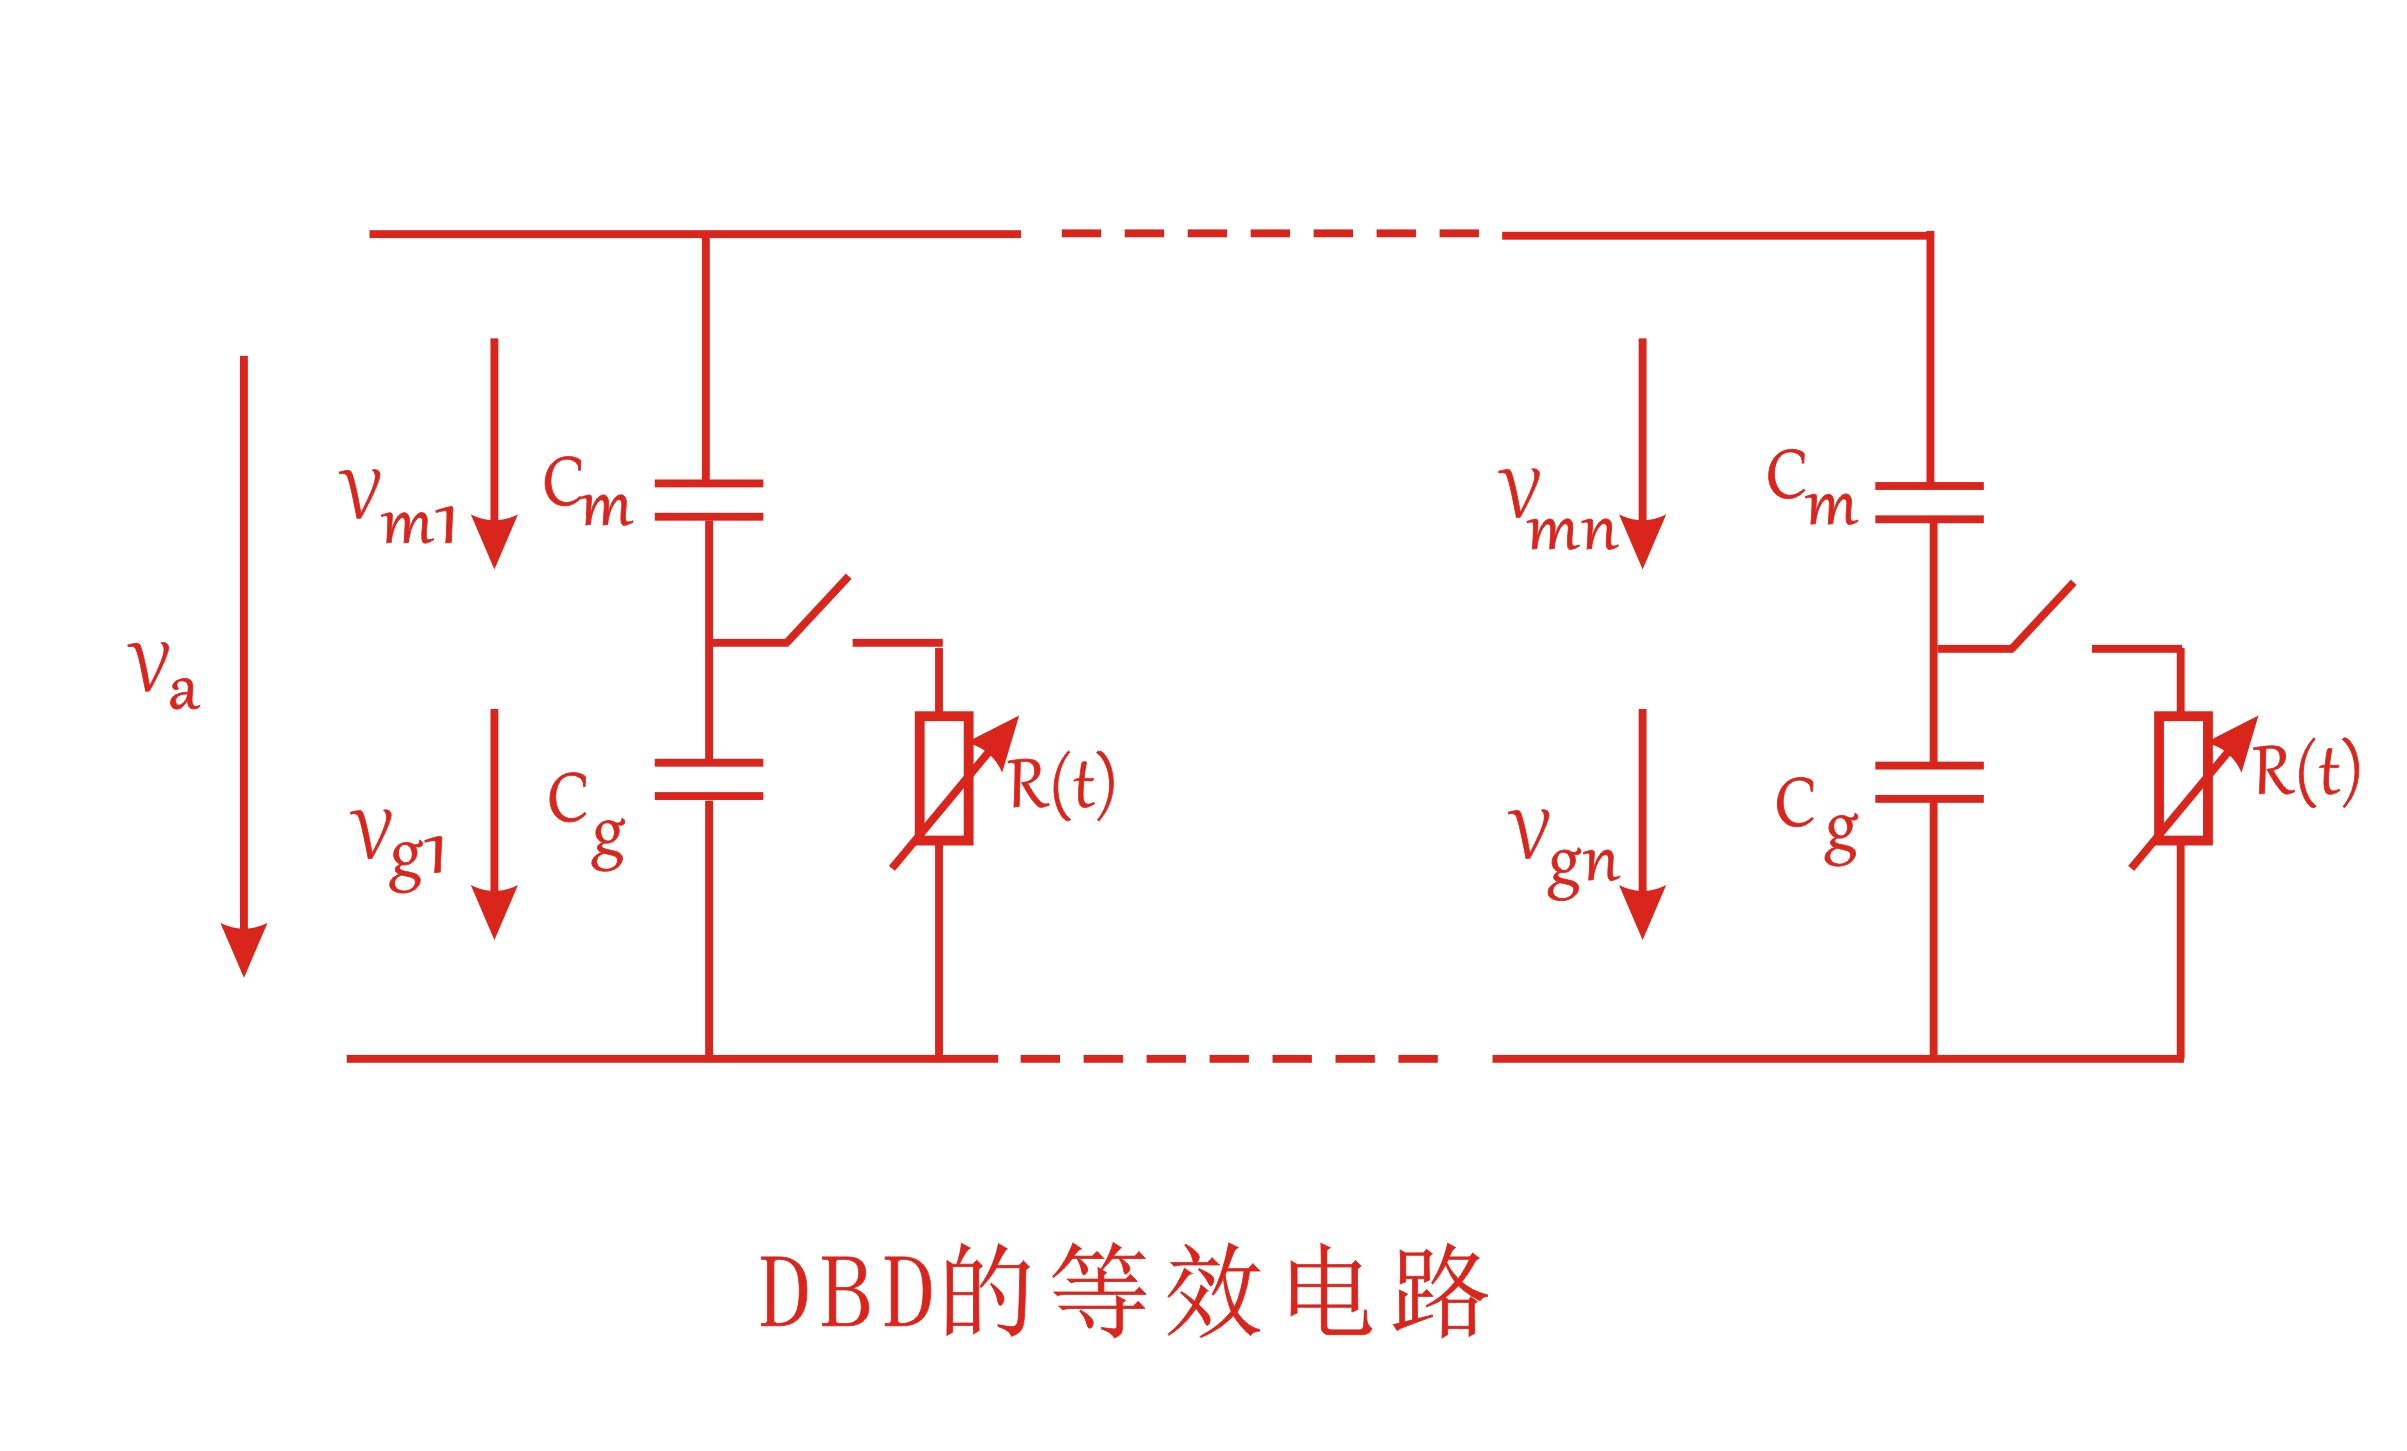 大气DBD等离子清洗机等效电路图-普乐斯等离子表面处理